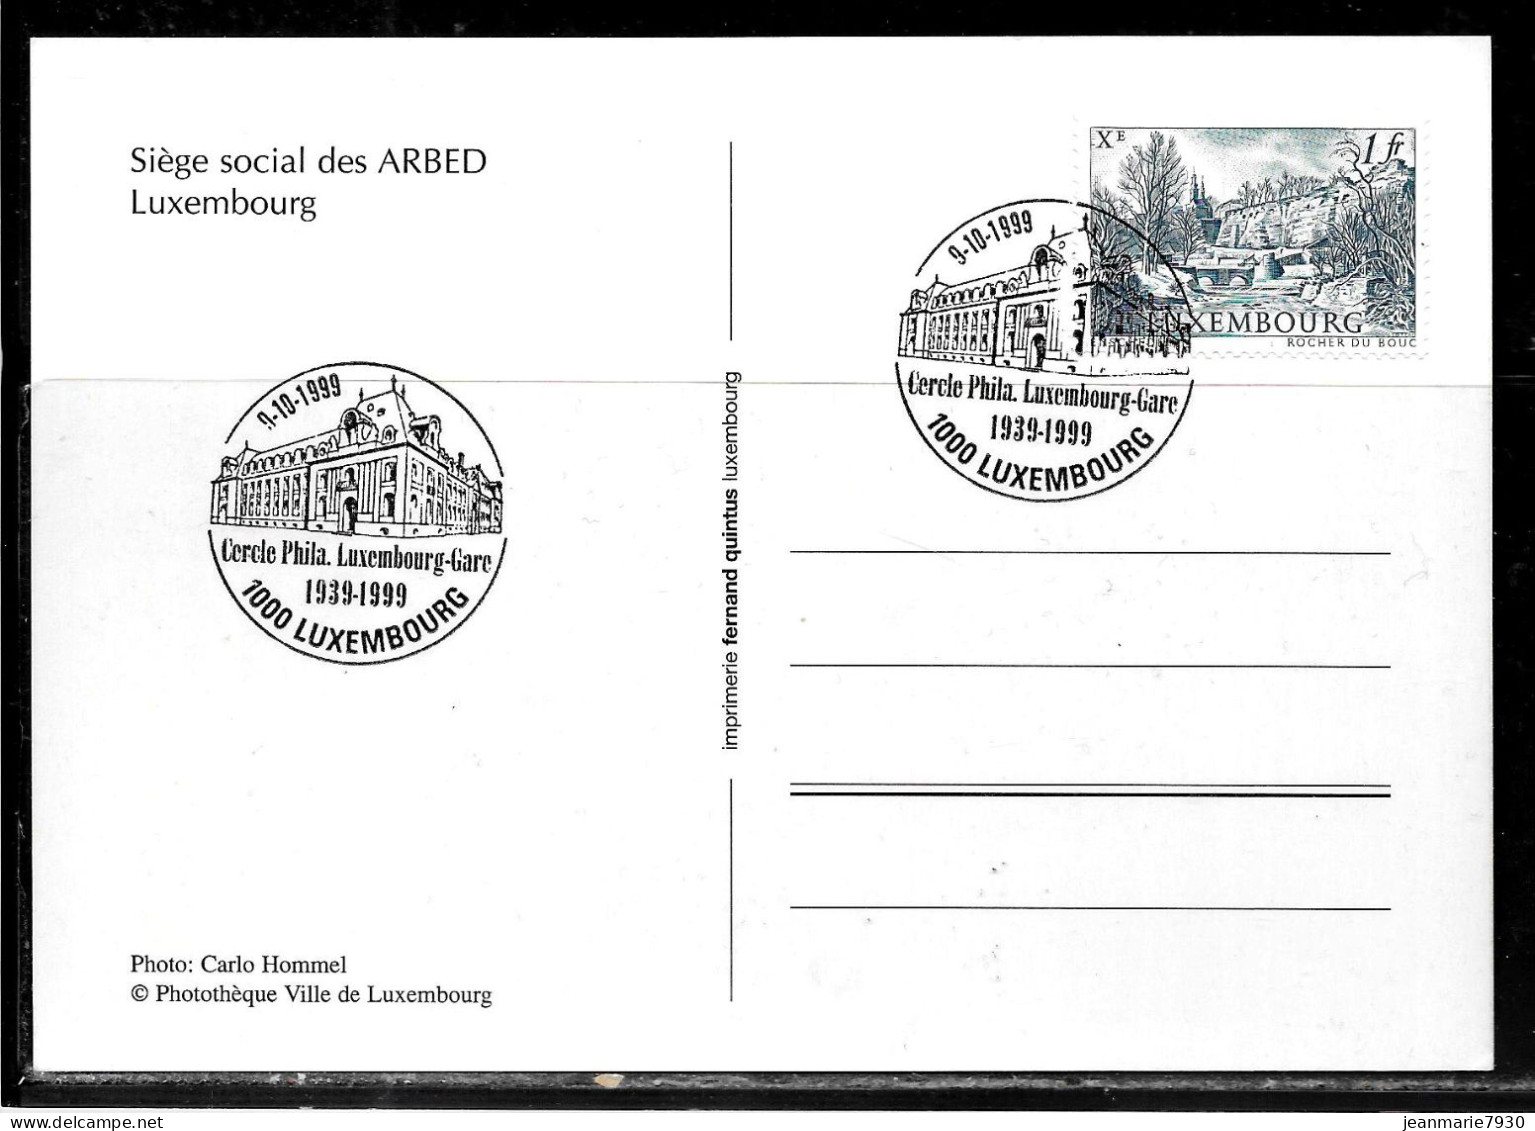 H366 - CARTE POSTALE DE LUXEMBOURG DU 09/10/99 - SIEGE DE L'ARBED - Cartas & Documentos